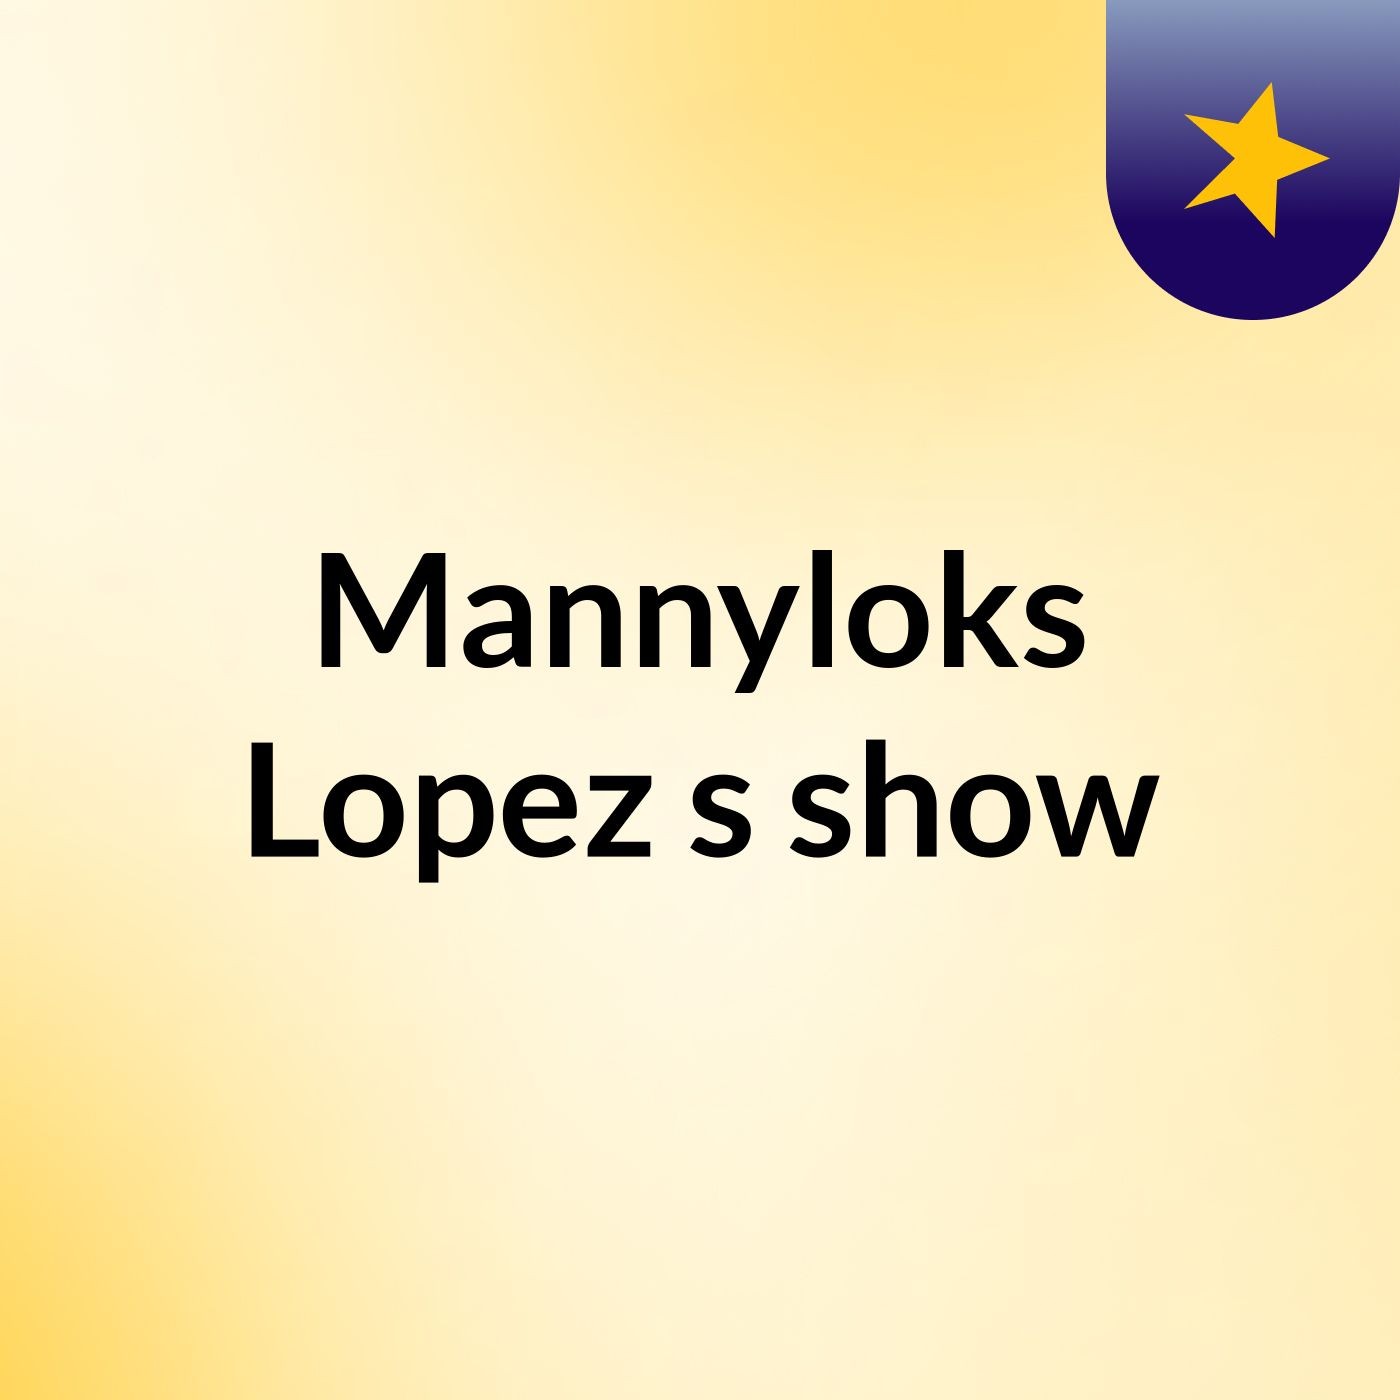 Mannyloks Lopez's show